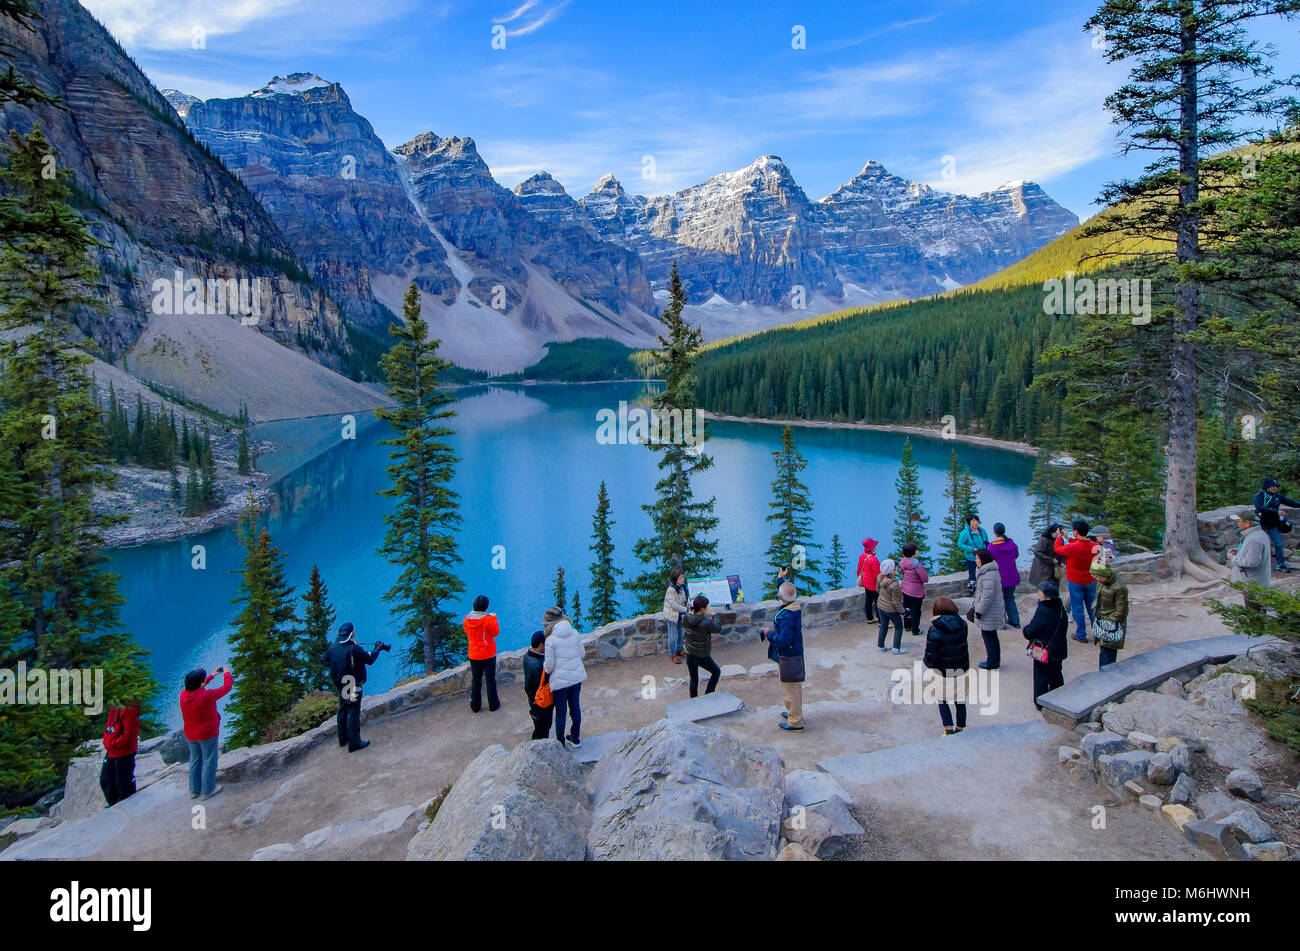 Los turistas chinos, el Lago Moraine, el Valle de los Diez Picos, Parque Nacional de Banff, Alberta, Canadá Foto de stock